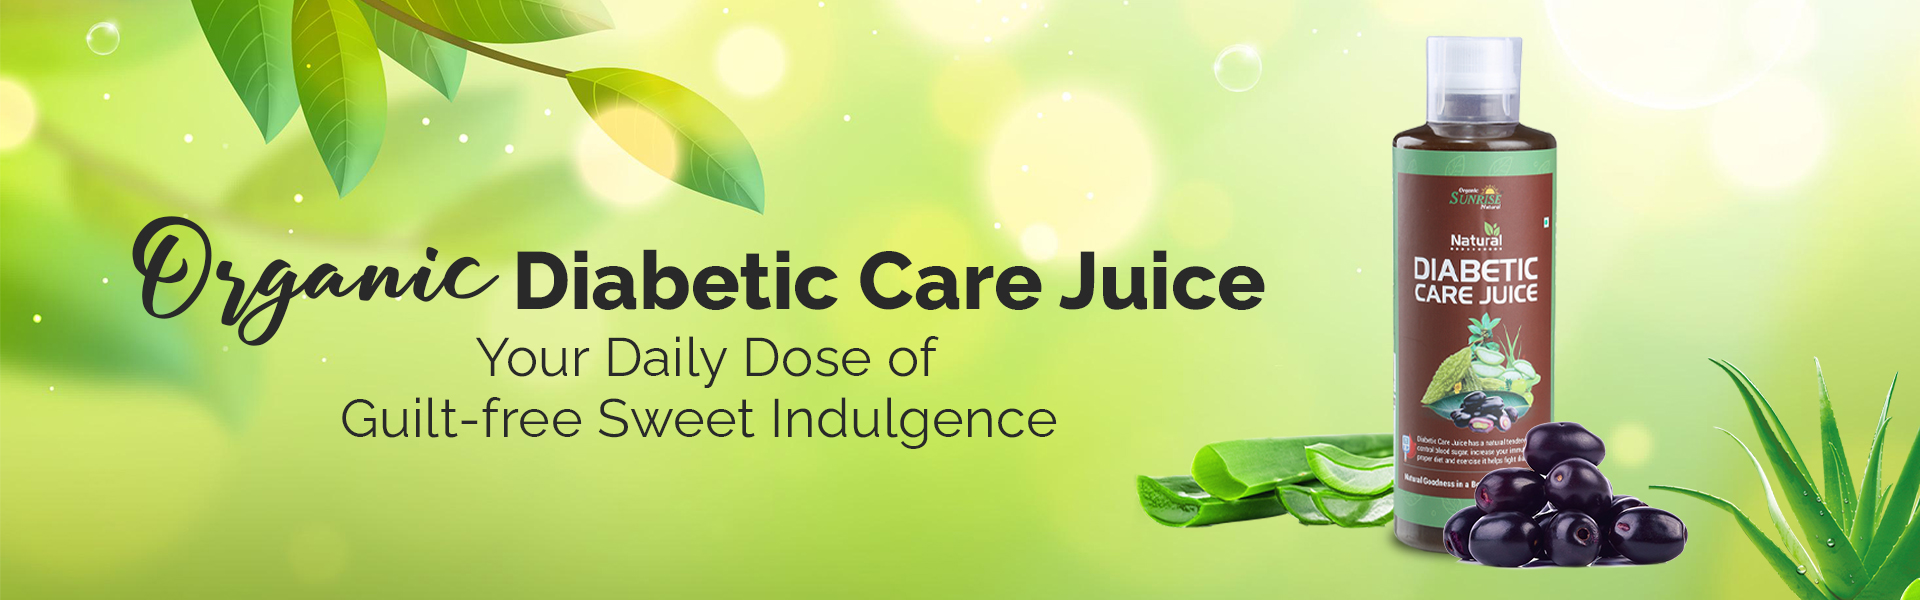 Sunrise Organic Diabetic Care Juice 